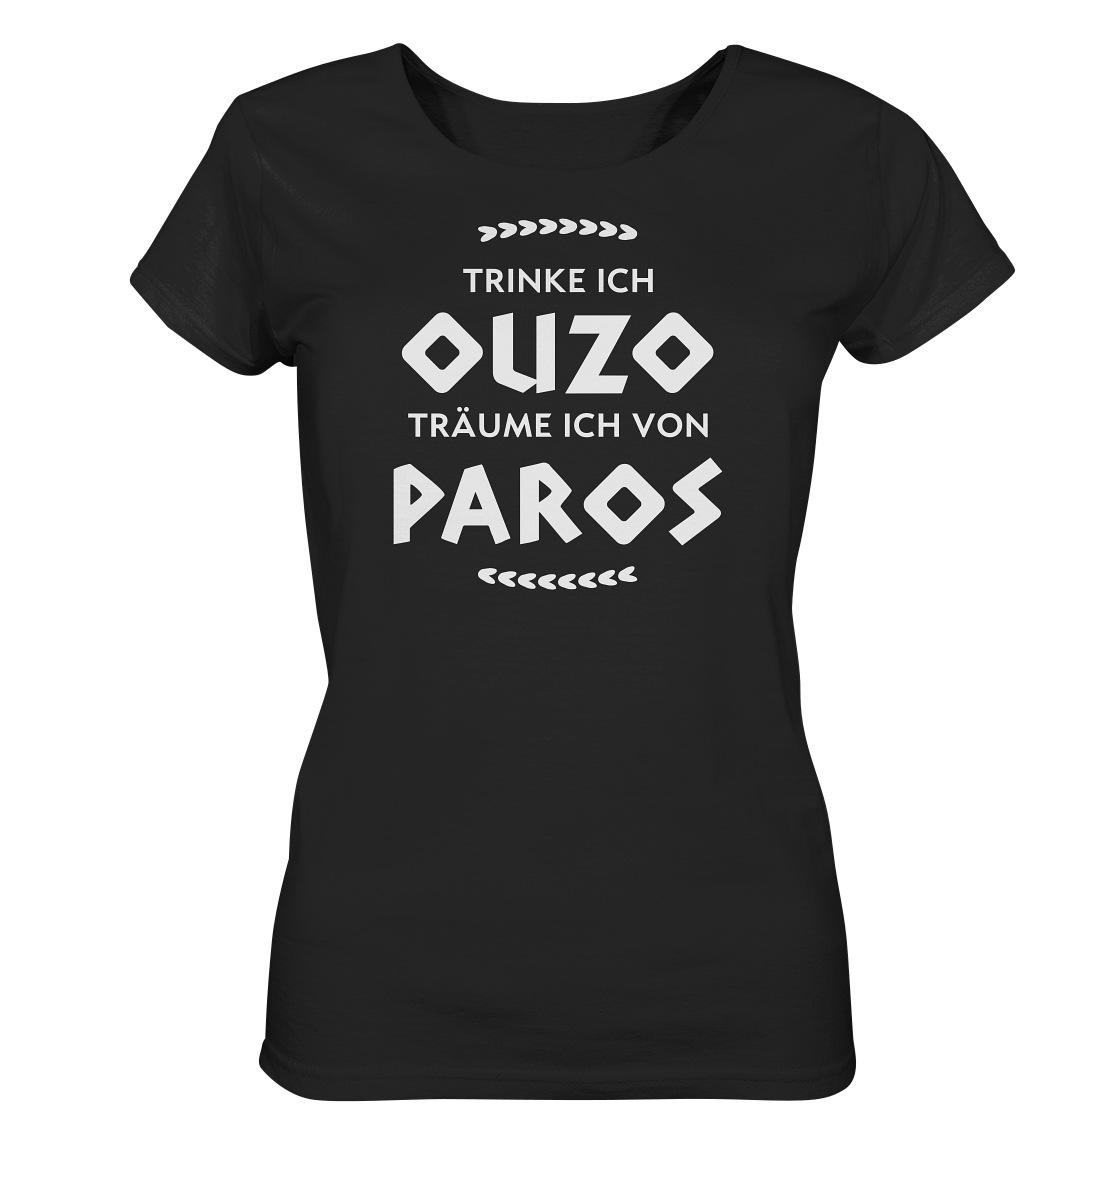 Trinke ich Ouzo träume ich von Paros - Ladies Organic Shirt